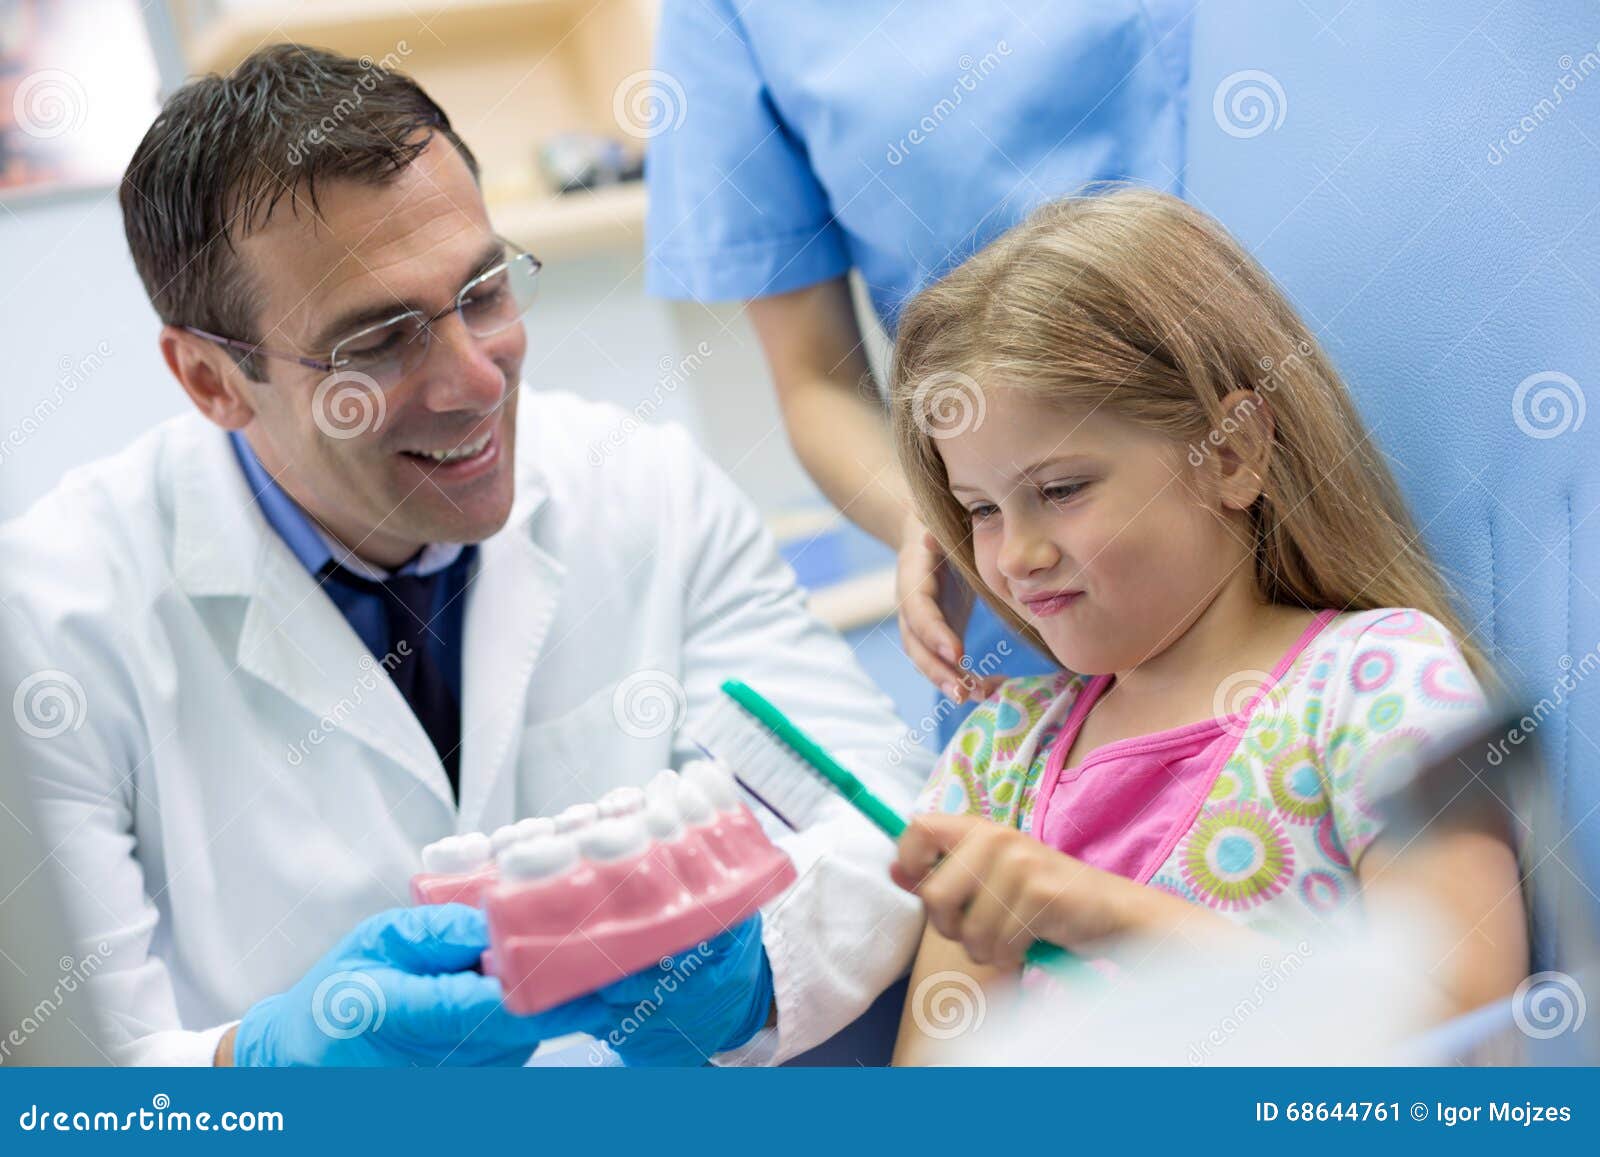 dentist teaches girl properly brushing on model of teeth